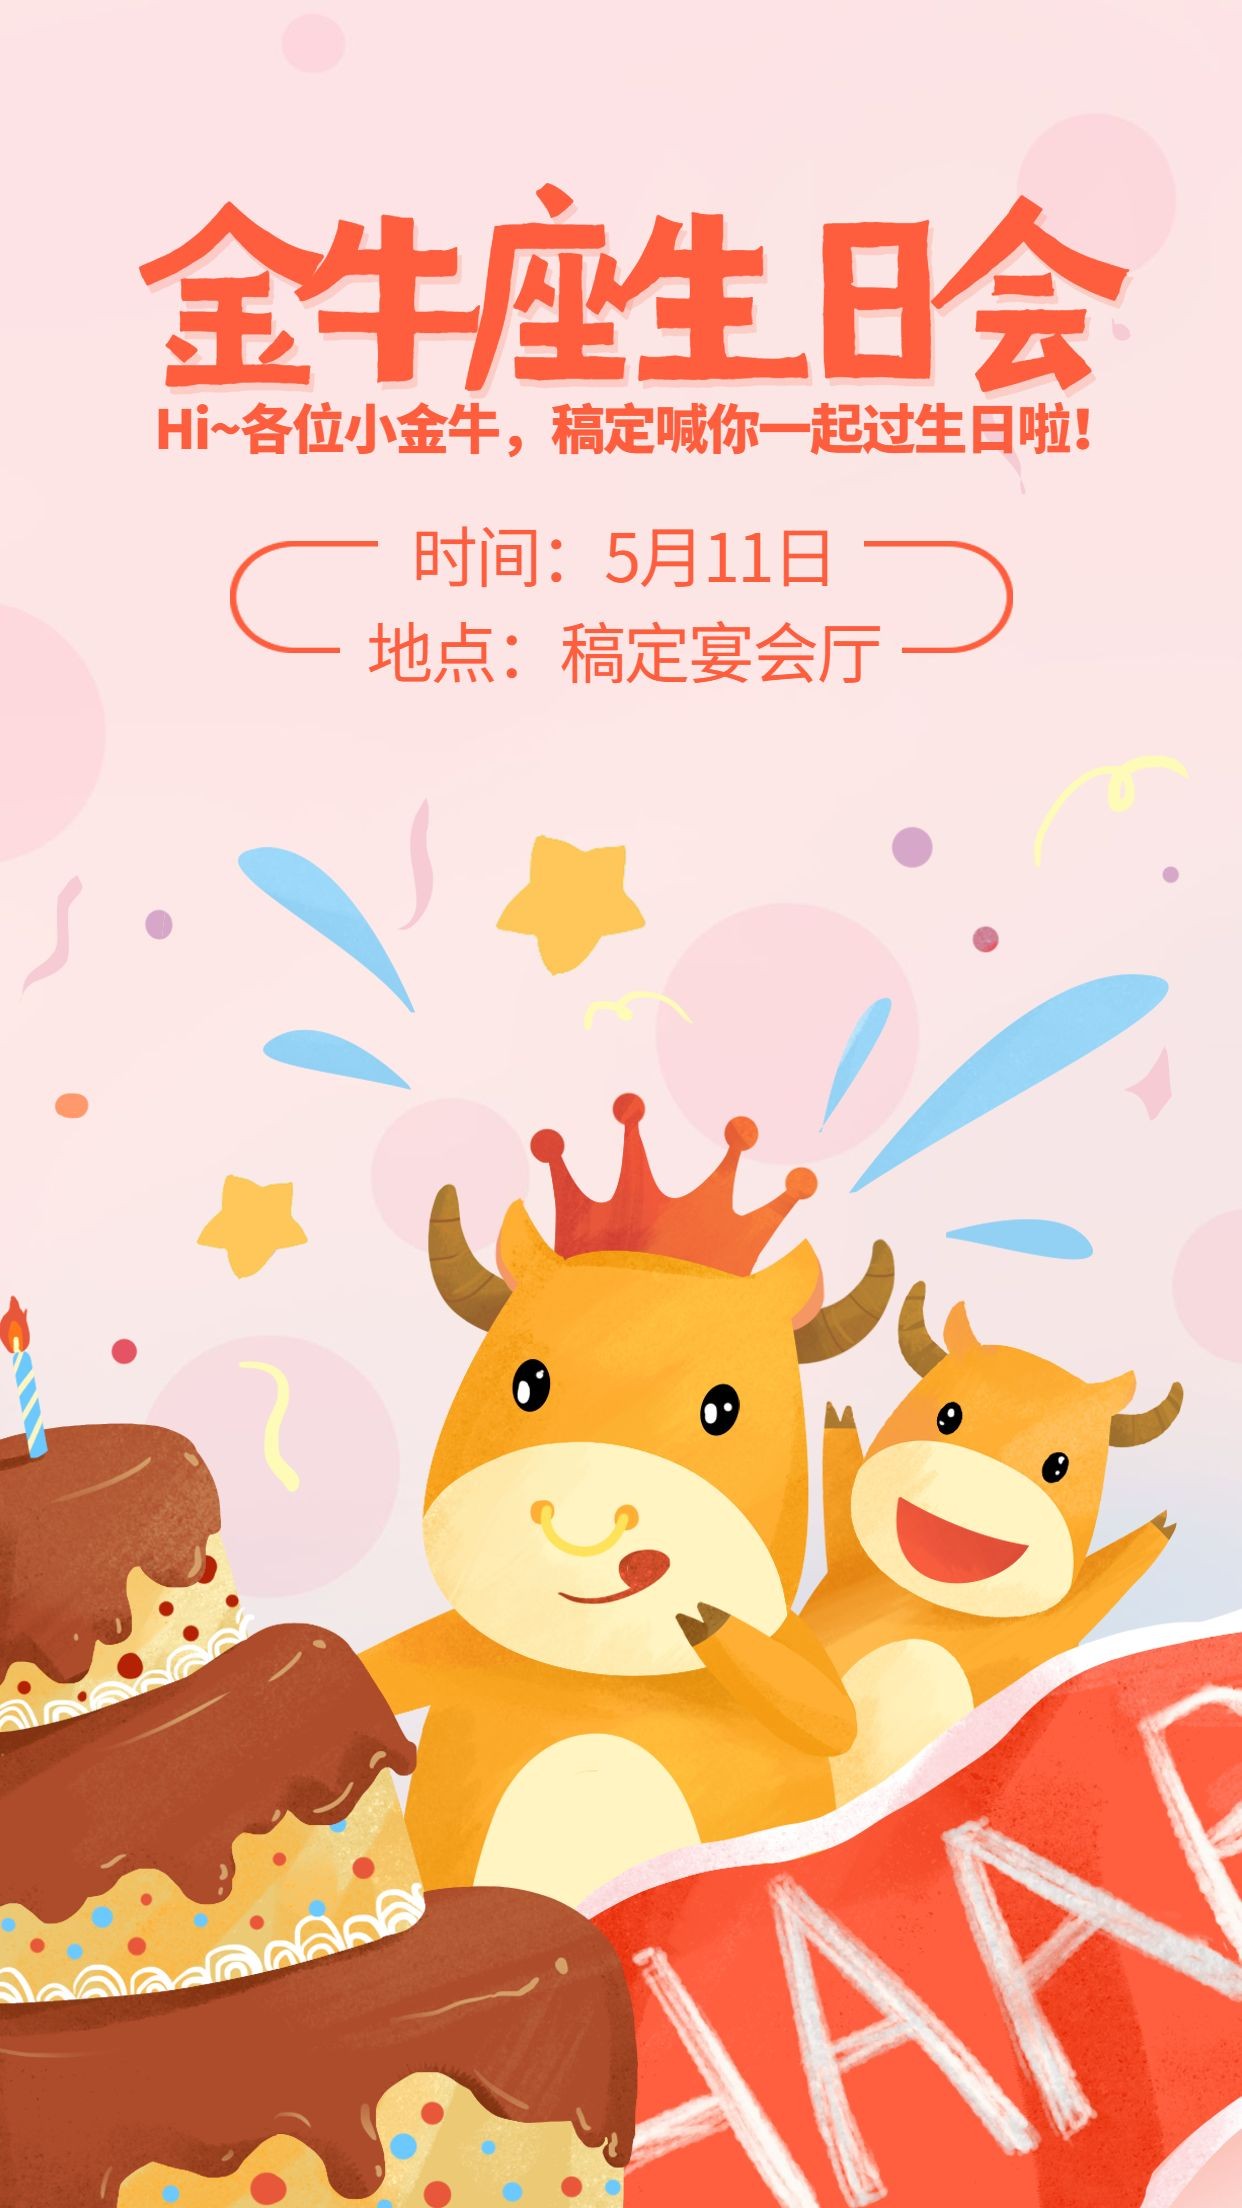 橙黄色十二星座生日快乐金牛座卡通节日庆祝中文海报 - 模板 - Canva可画